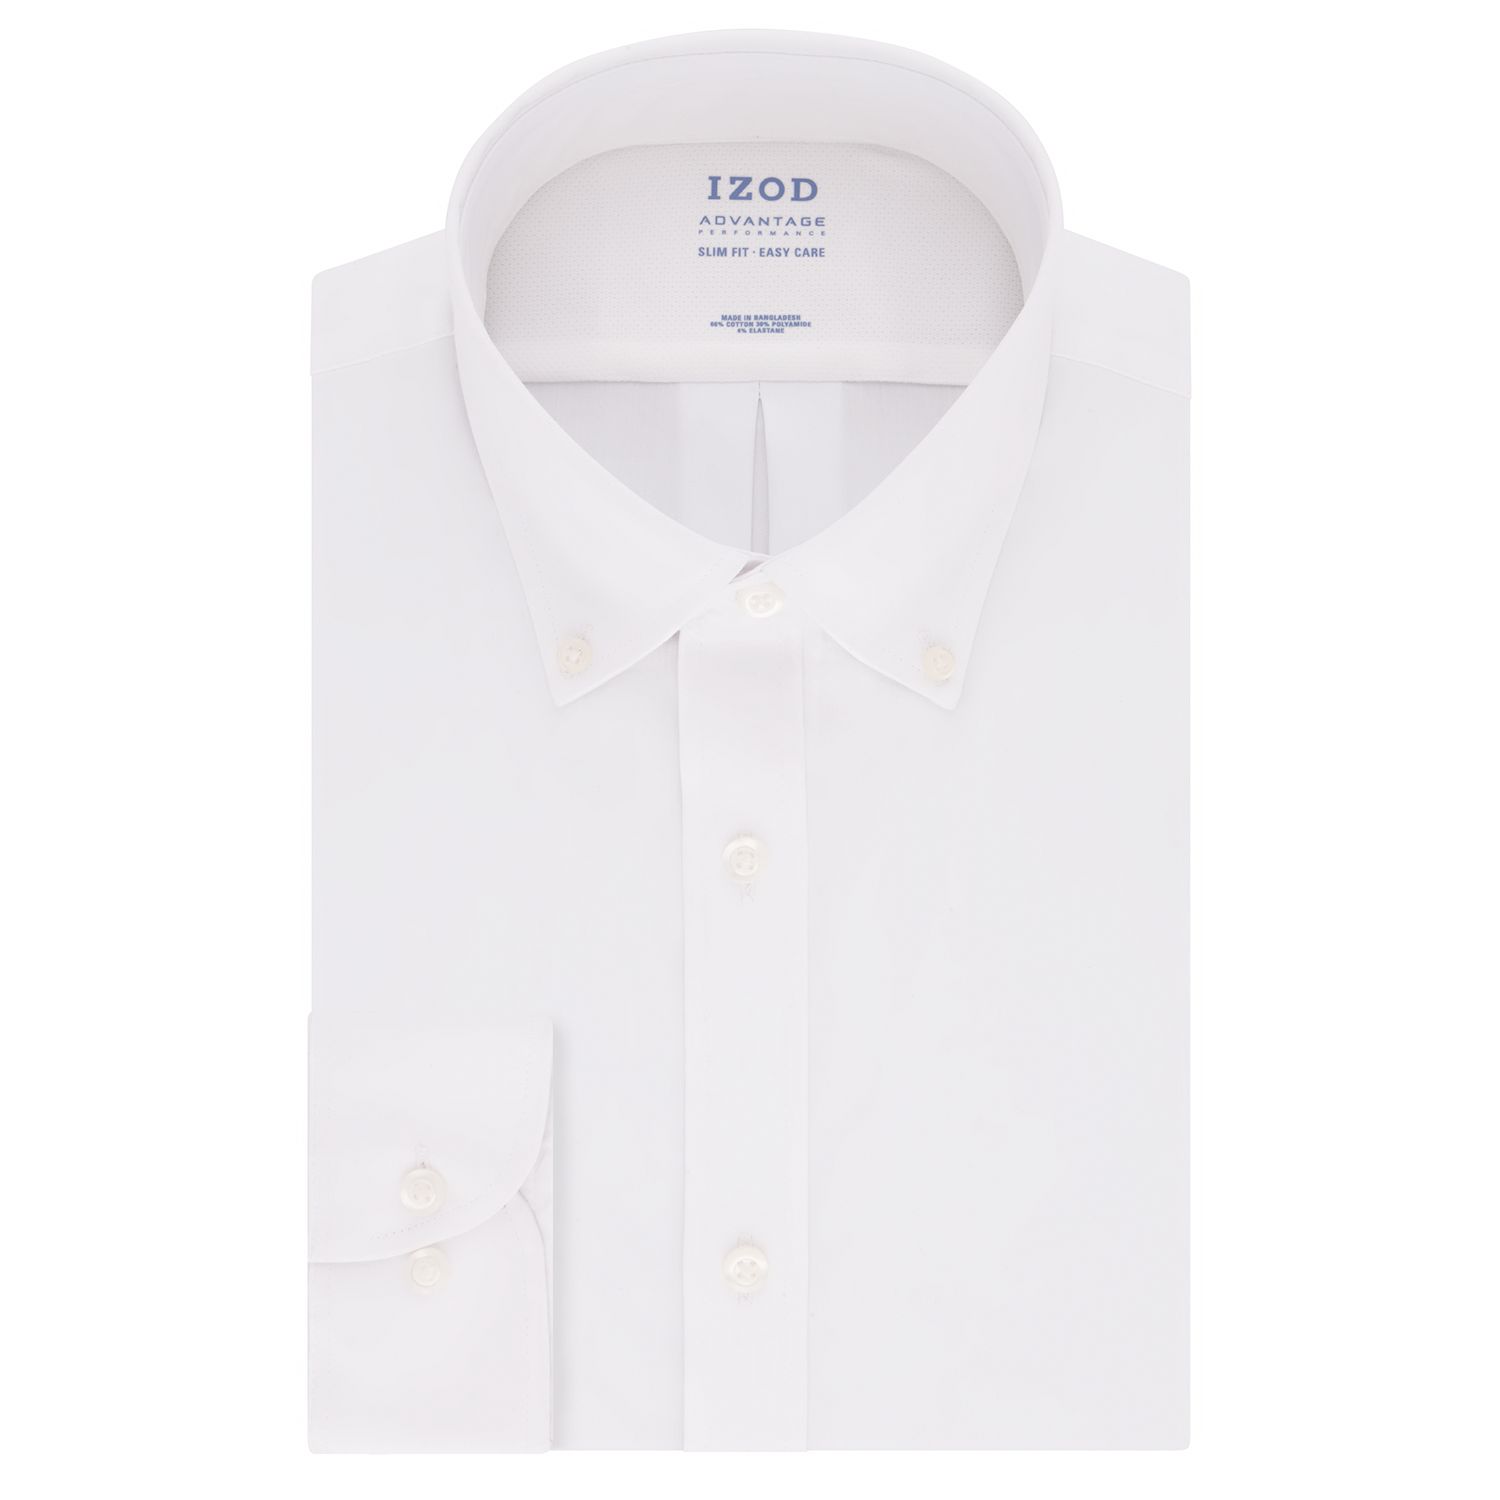 izod white dress shirt